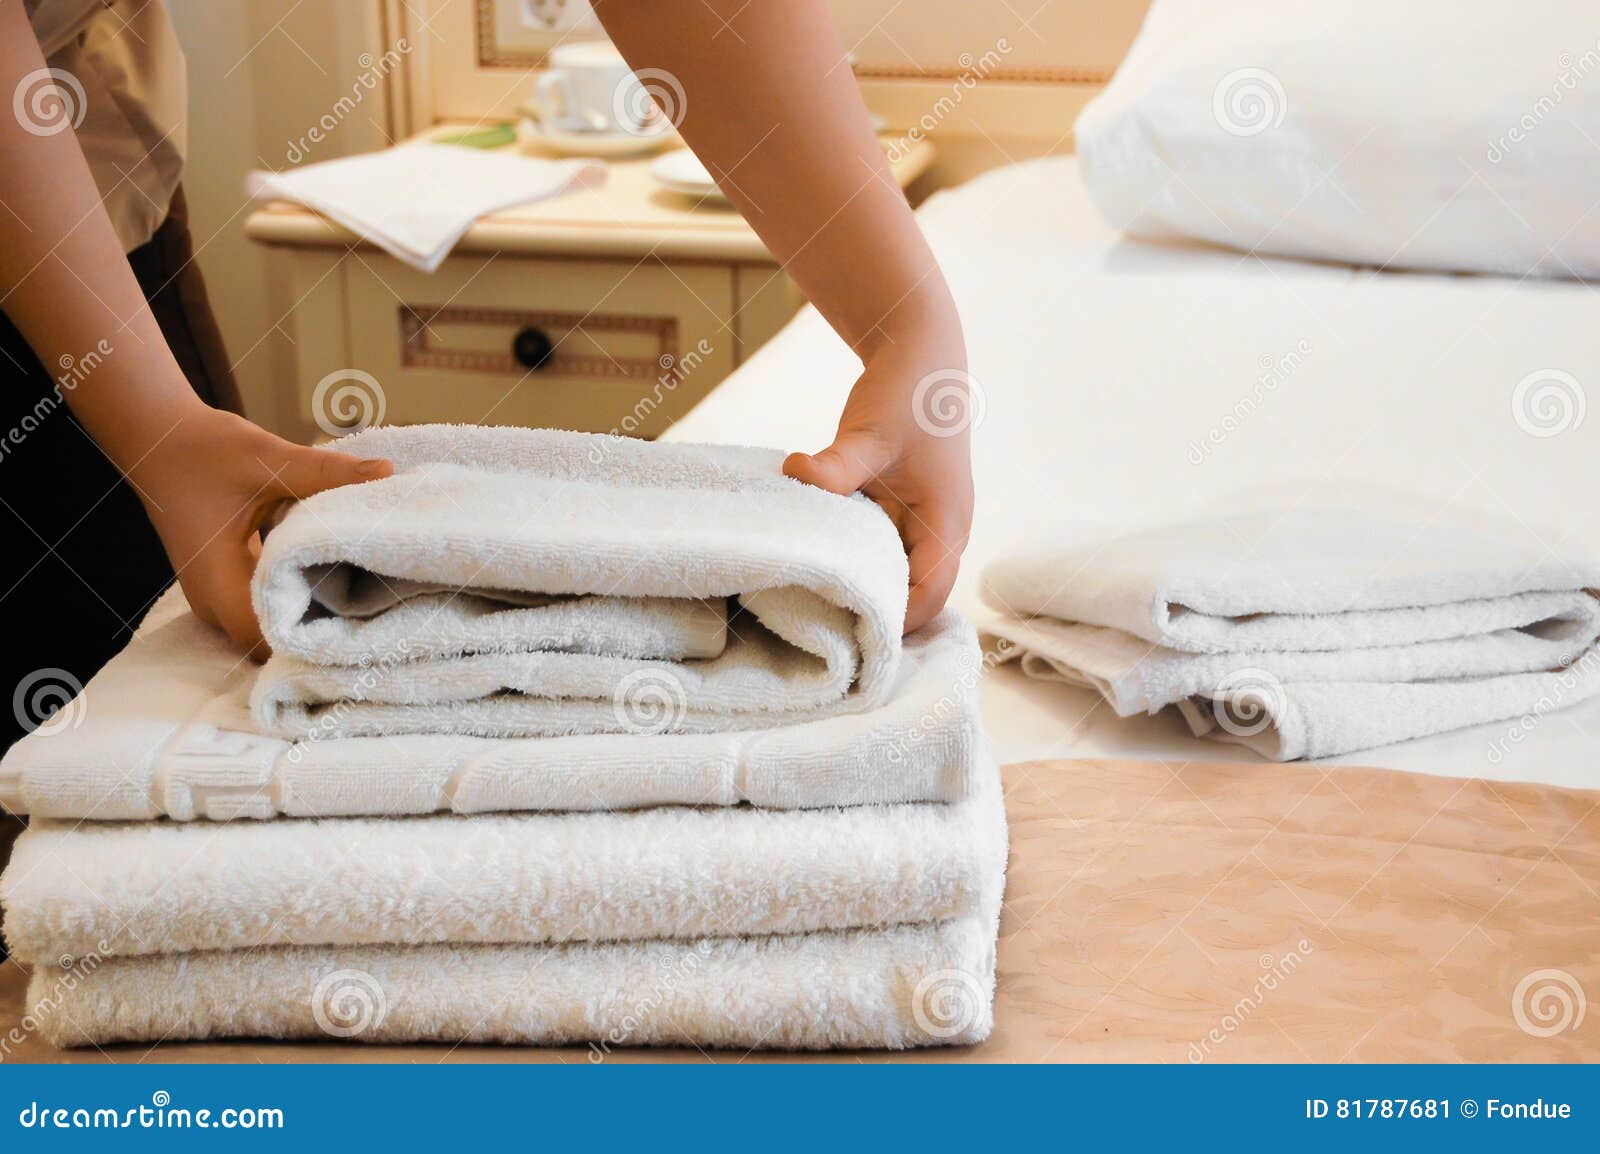 Полотенце отмыть. Расправленное полотенце на кровати. Полотенца на тележке горничной. Полотенца моющий фирменный. Полотенце на стуле.